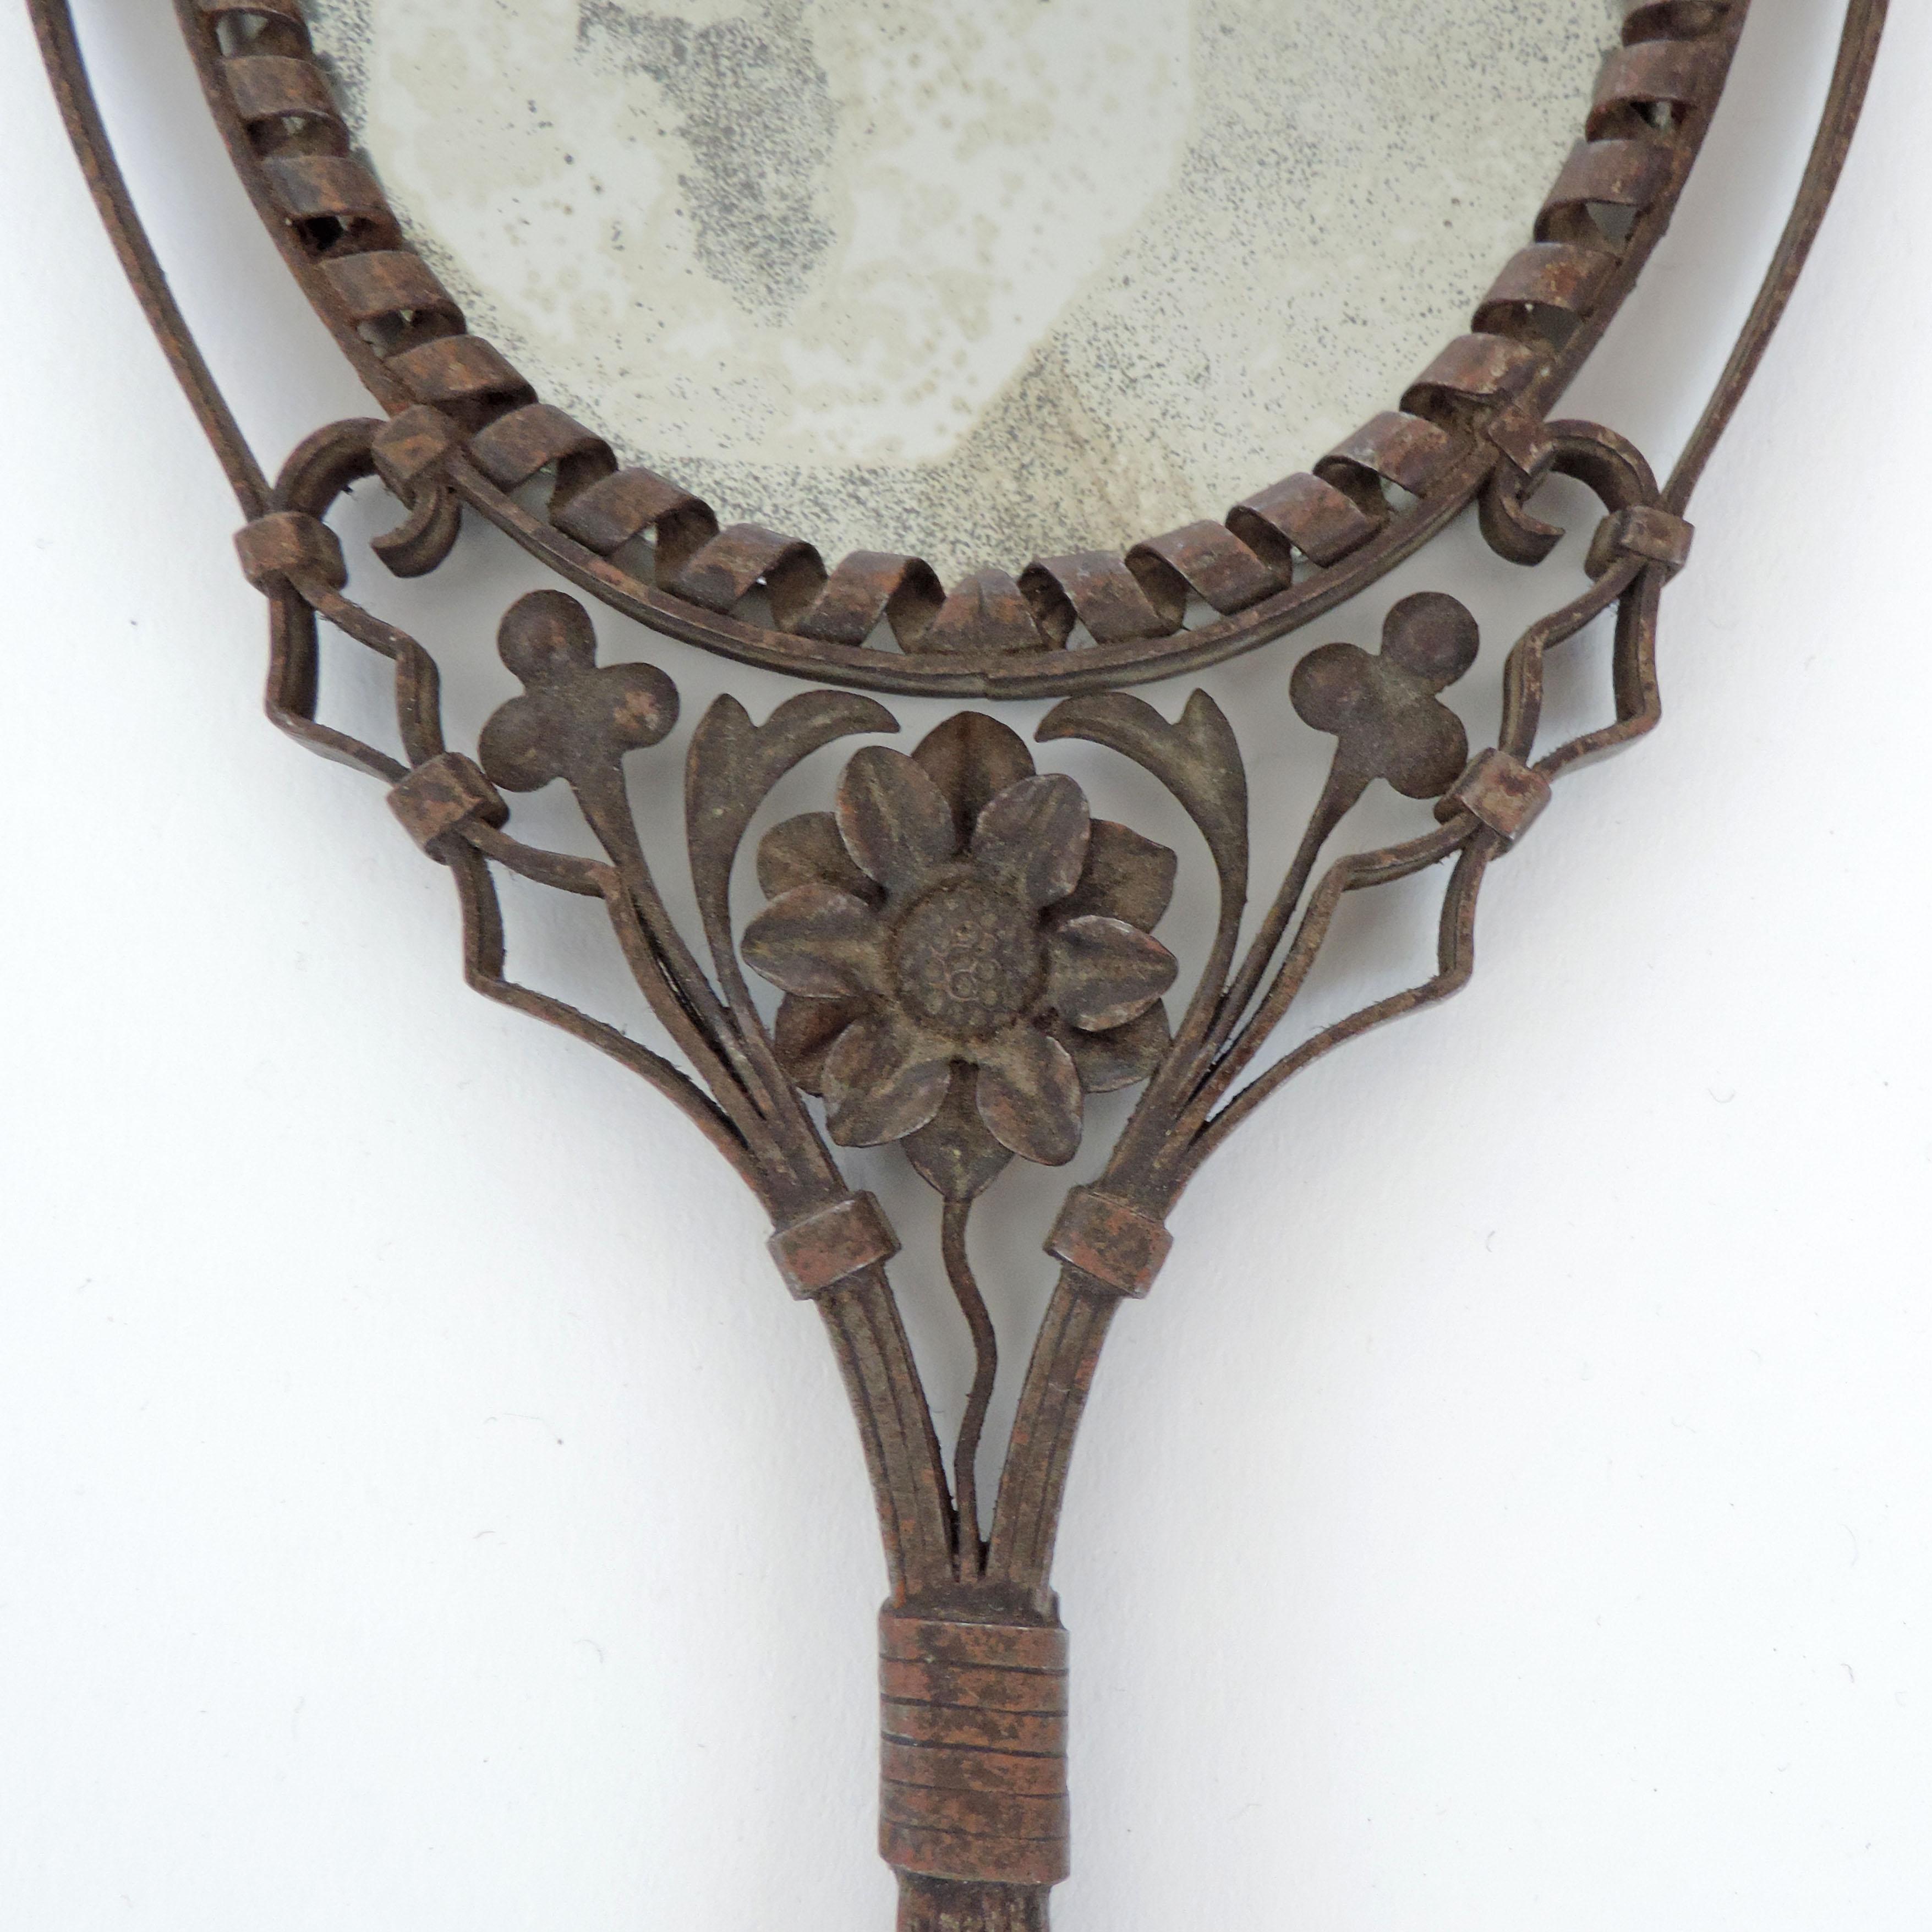 antique hand mirror